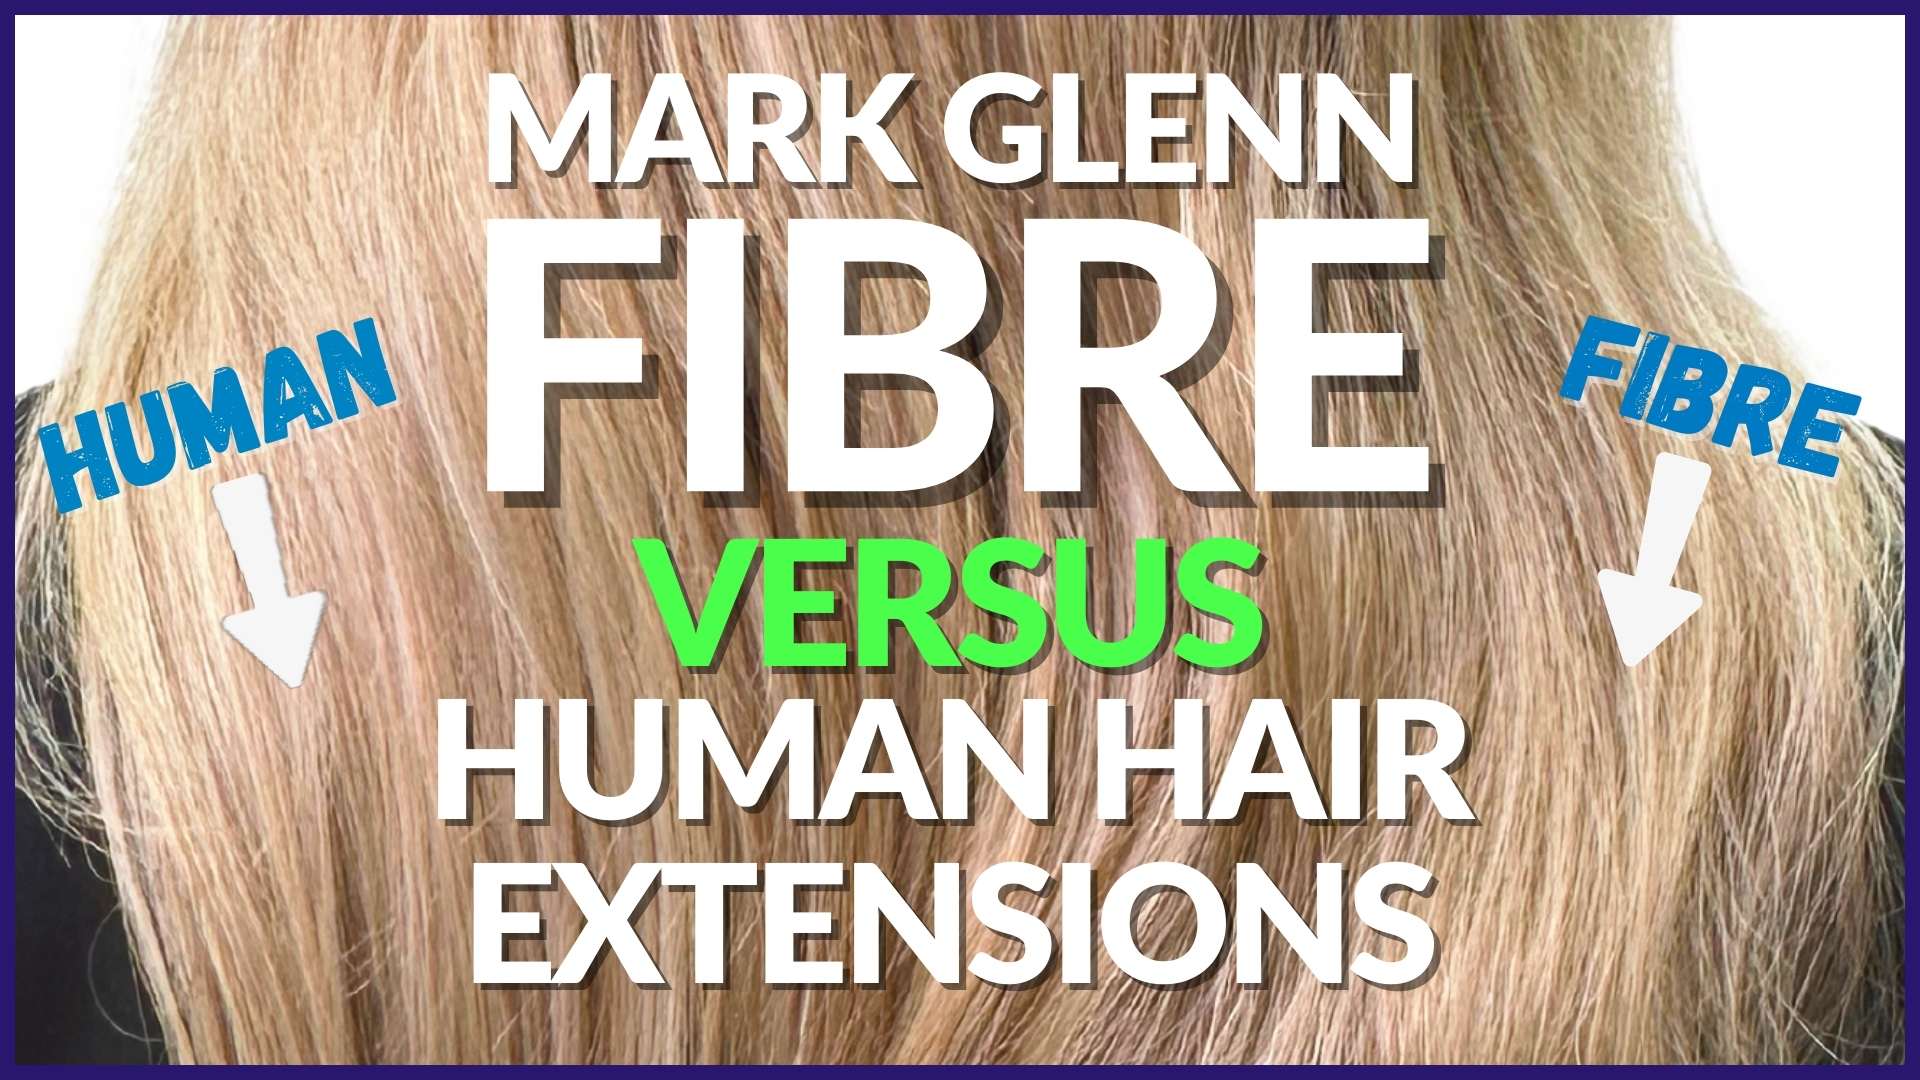 Mark Glenn Fibre vs Human Hair Extensions - London Speaks!